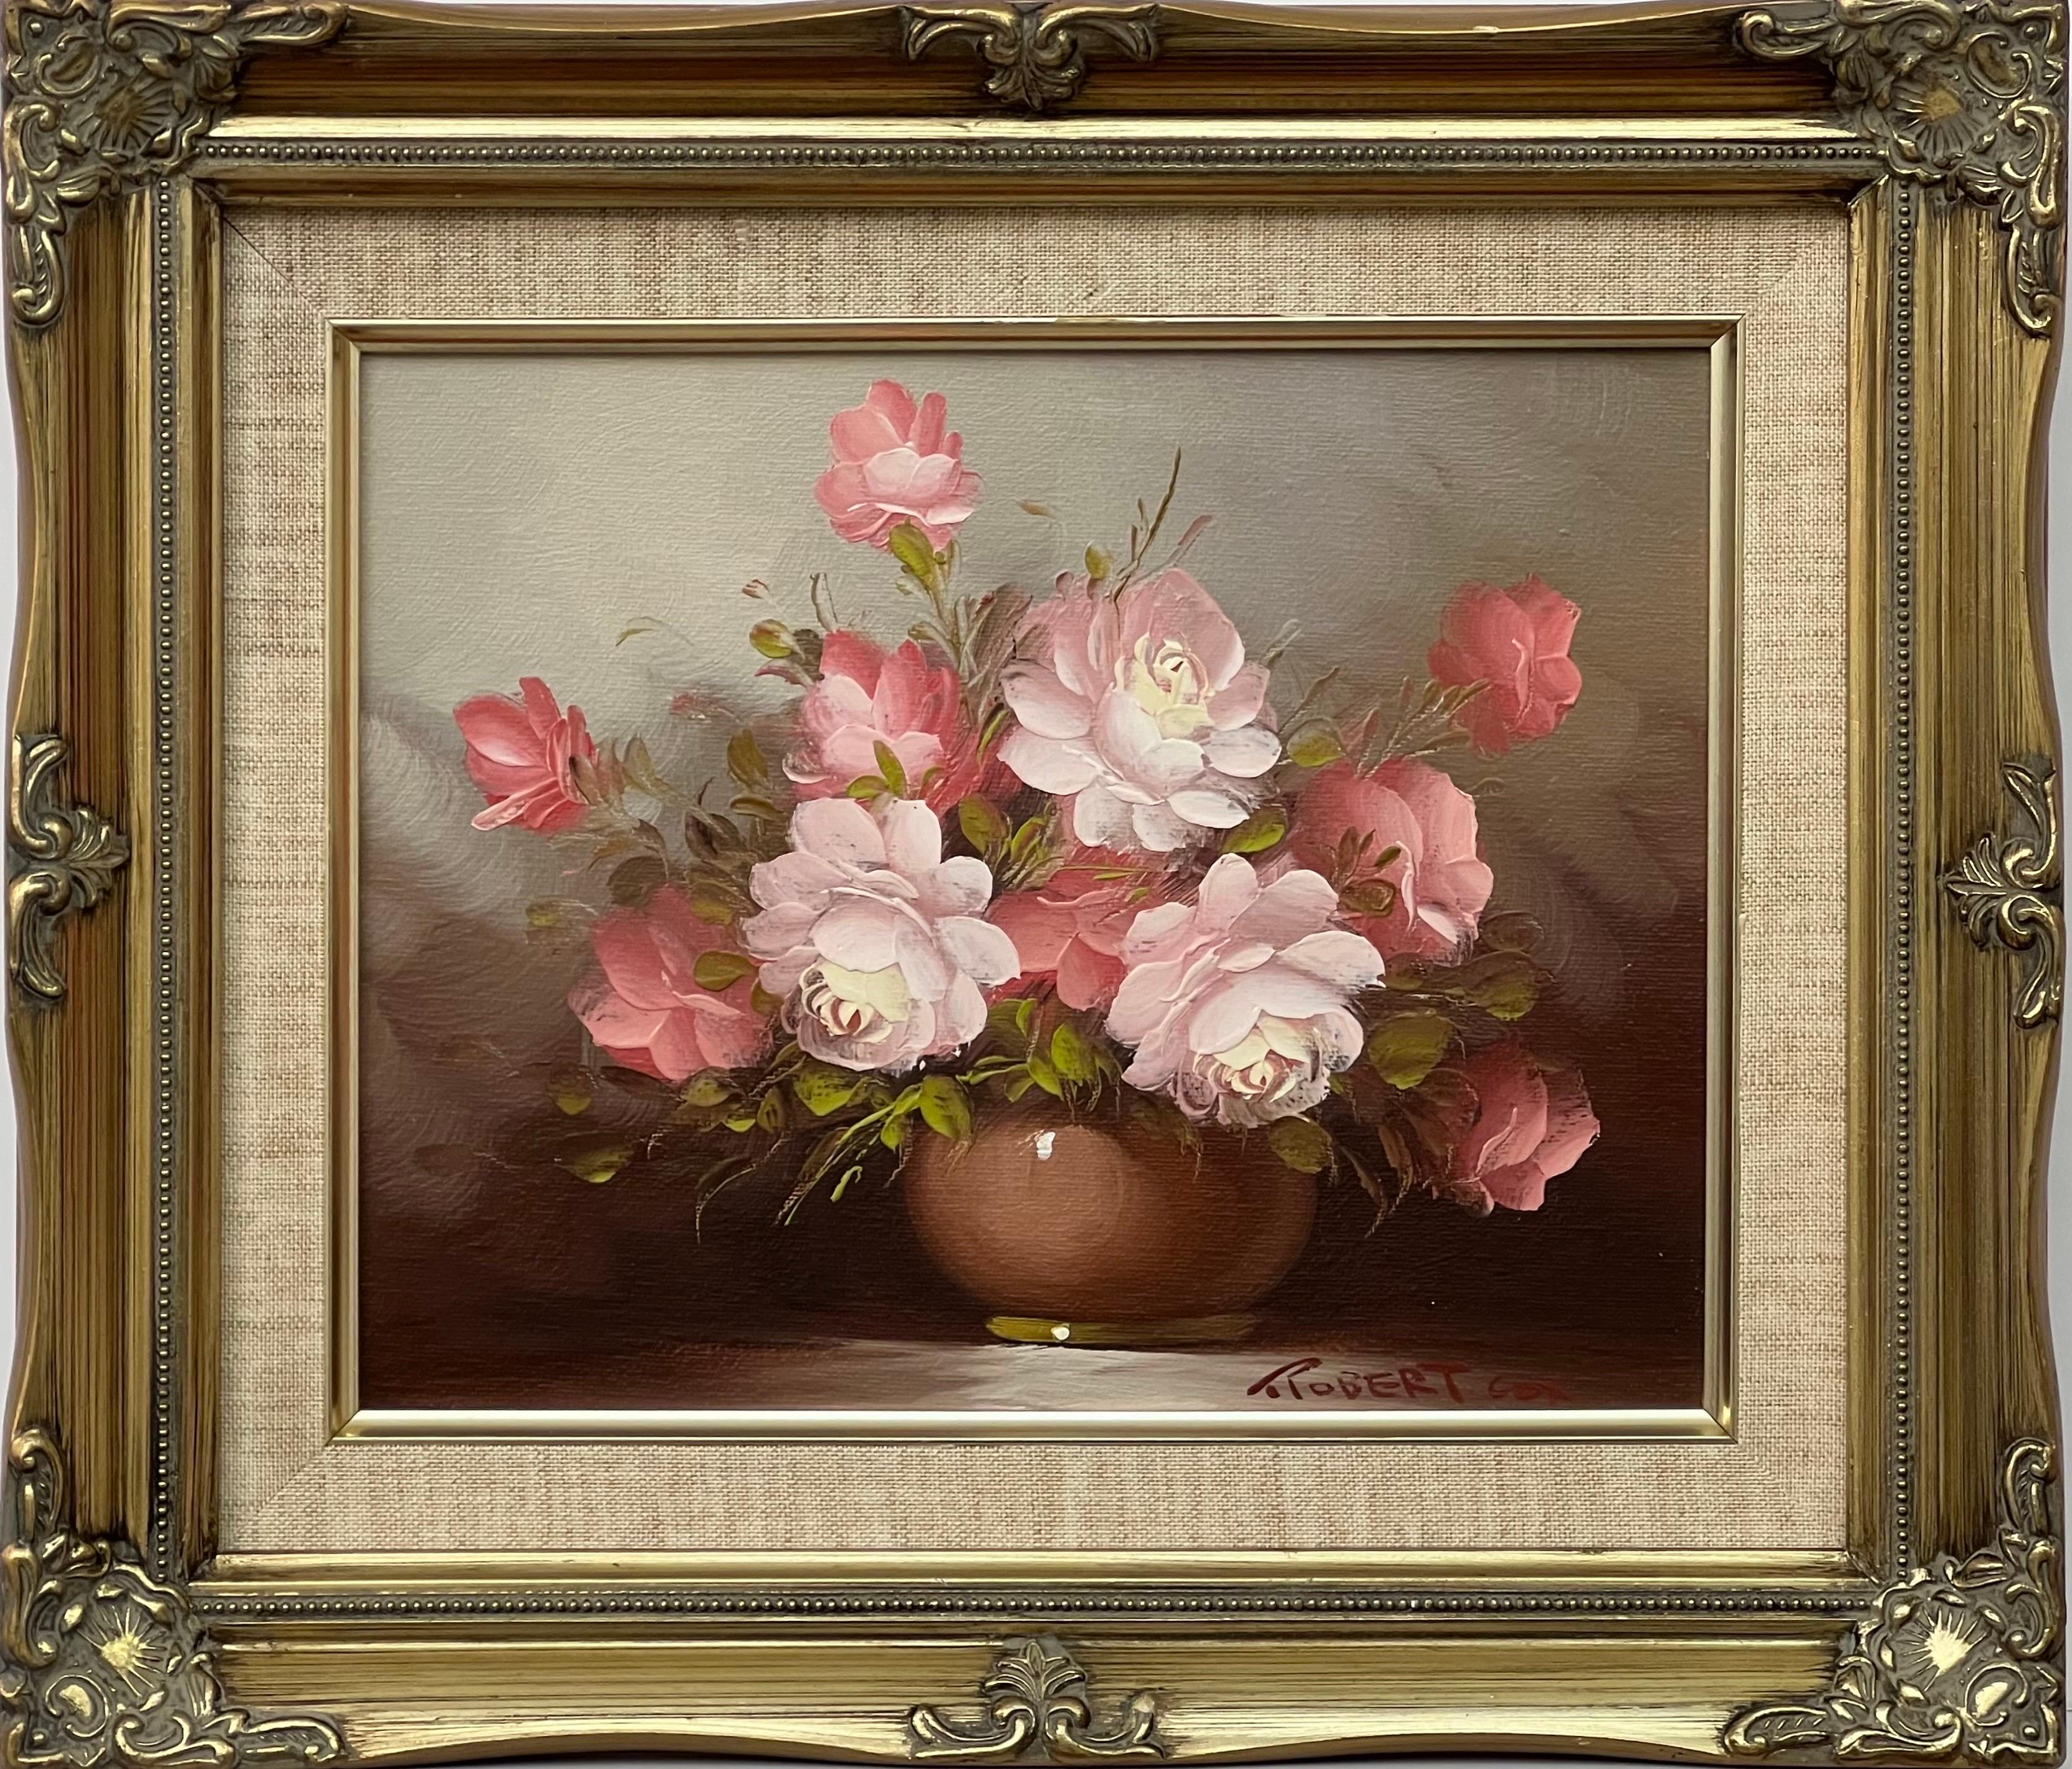 Robert Cox Interior Painting – Stillleben einer Vase aus rosa-roten und weißen Rosen von amerikanischem Künstler des 20. Jahrhunderts